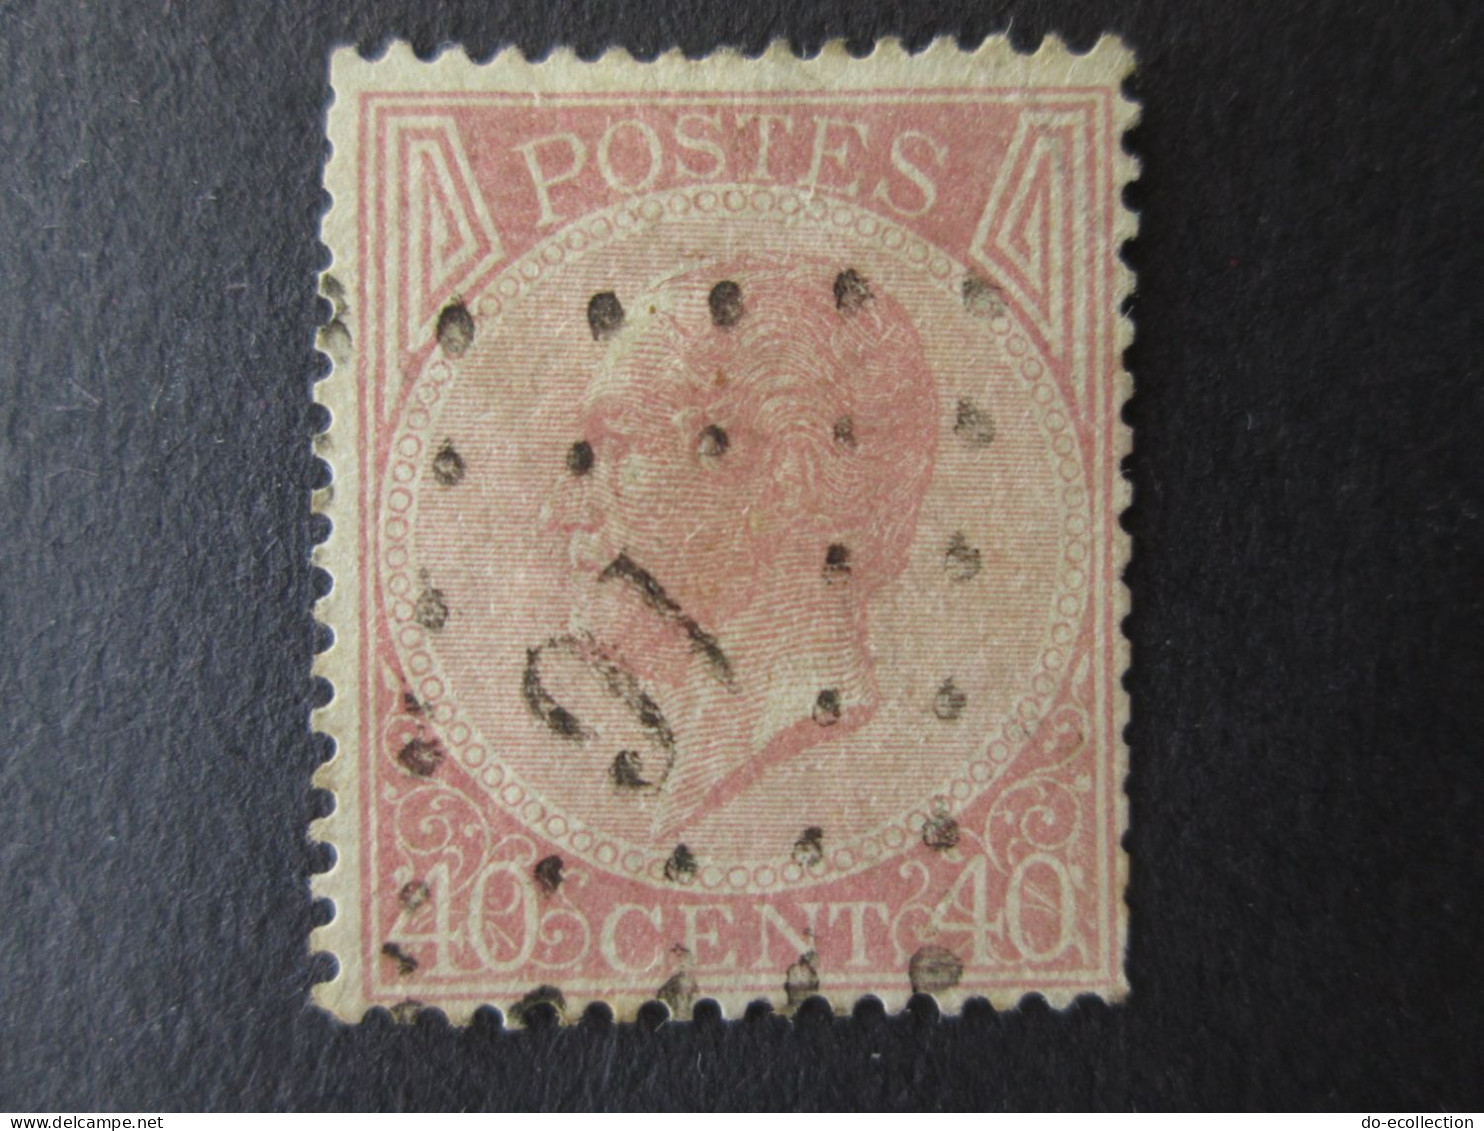 BELGIQUE 6 timbres 1865-1866 oblitération 12/16/89/141/332/357 10c 20c 30c 40c Leopold I Belgie Belgium timbre stamps